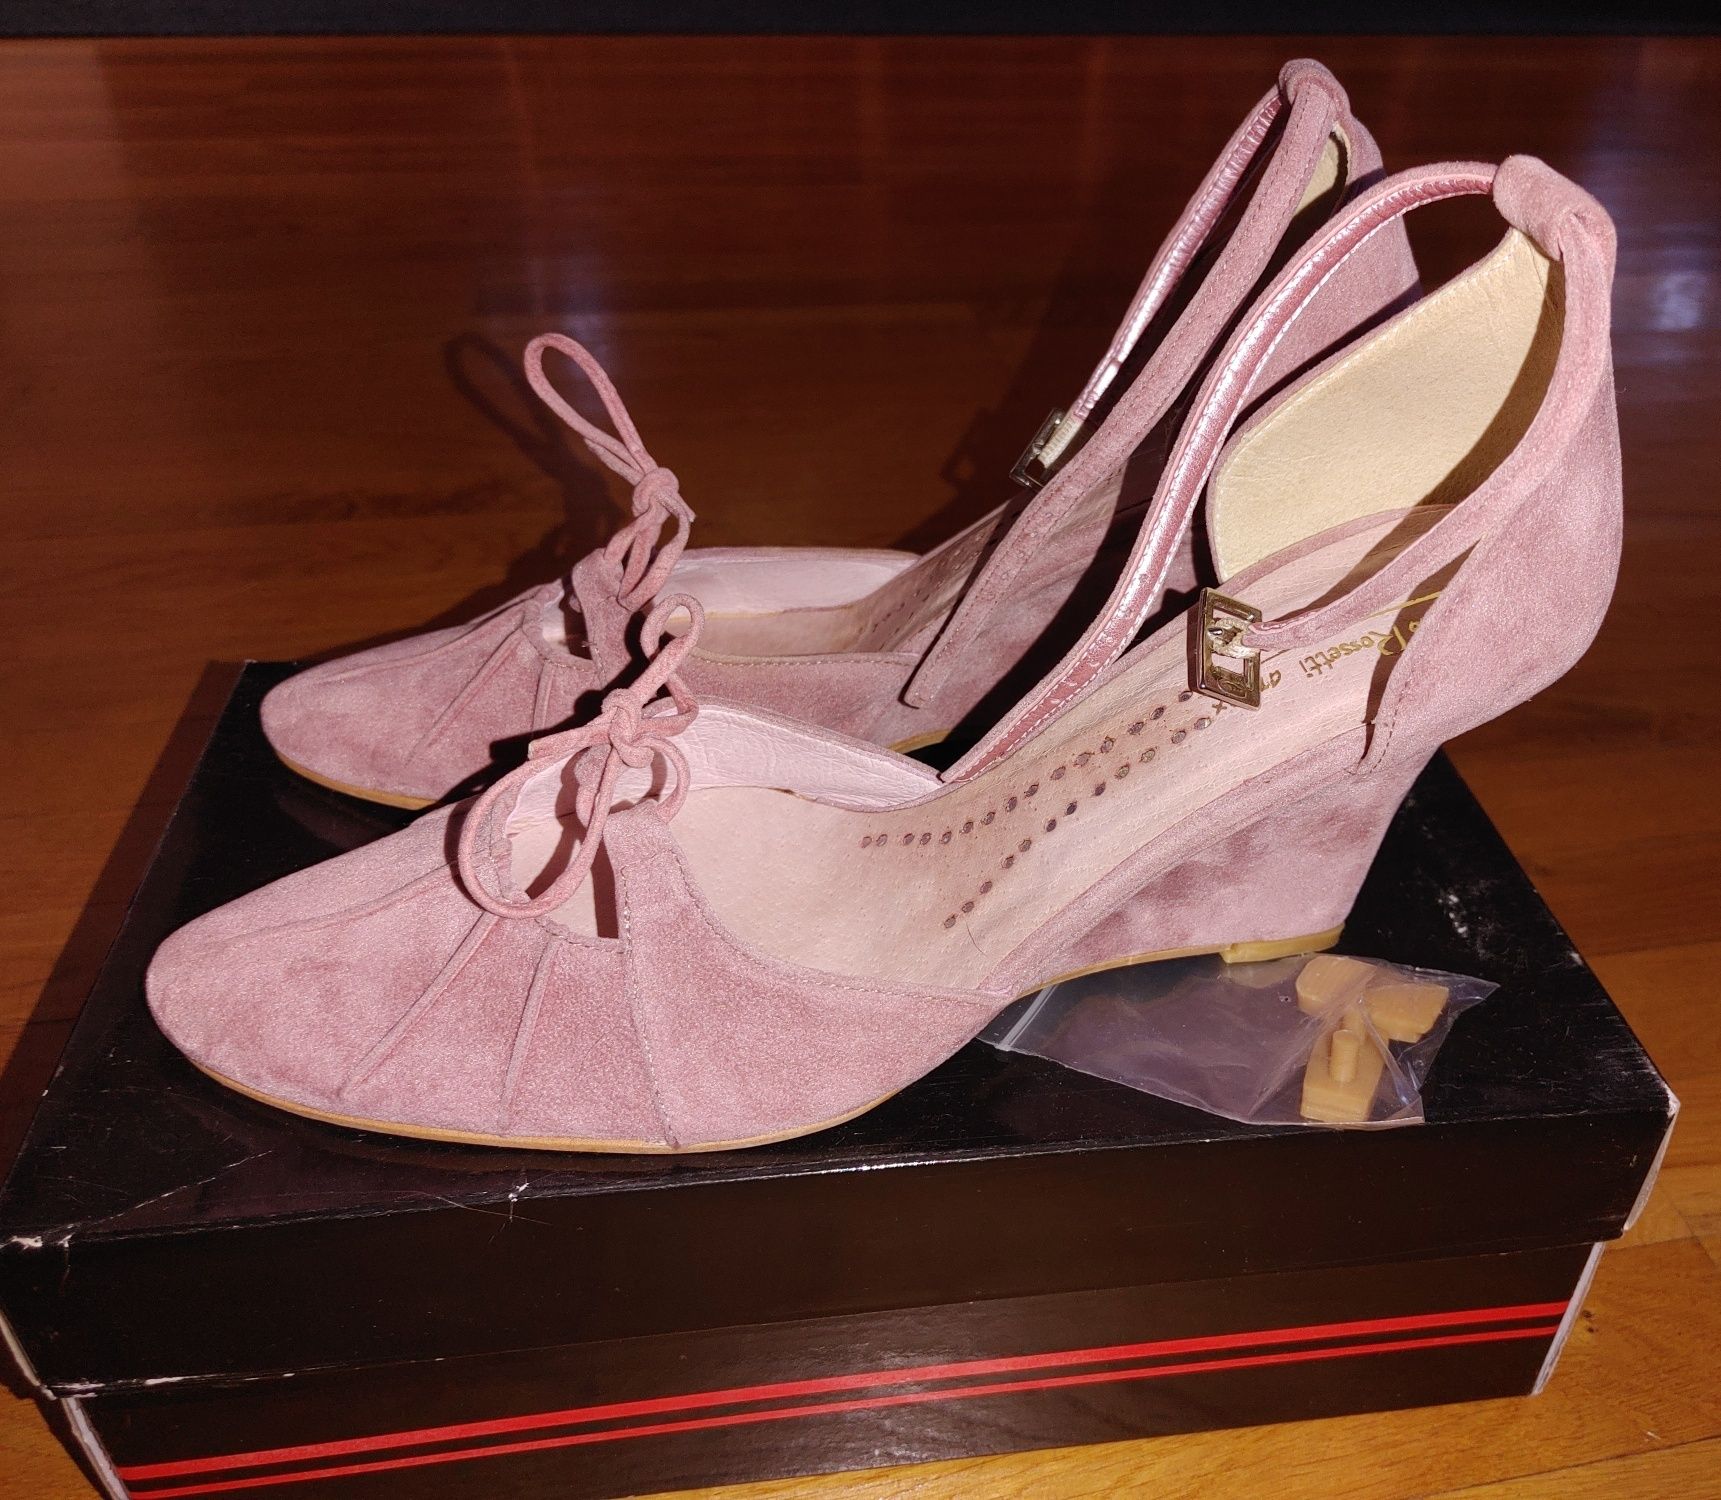 Buty zamszowe różowe - rozmiar 39